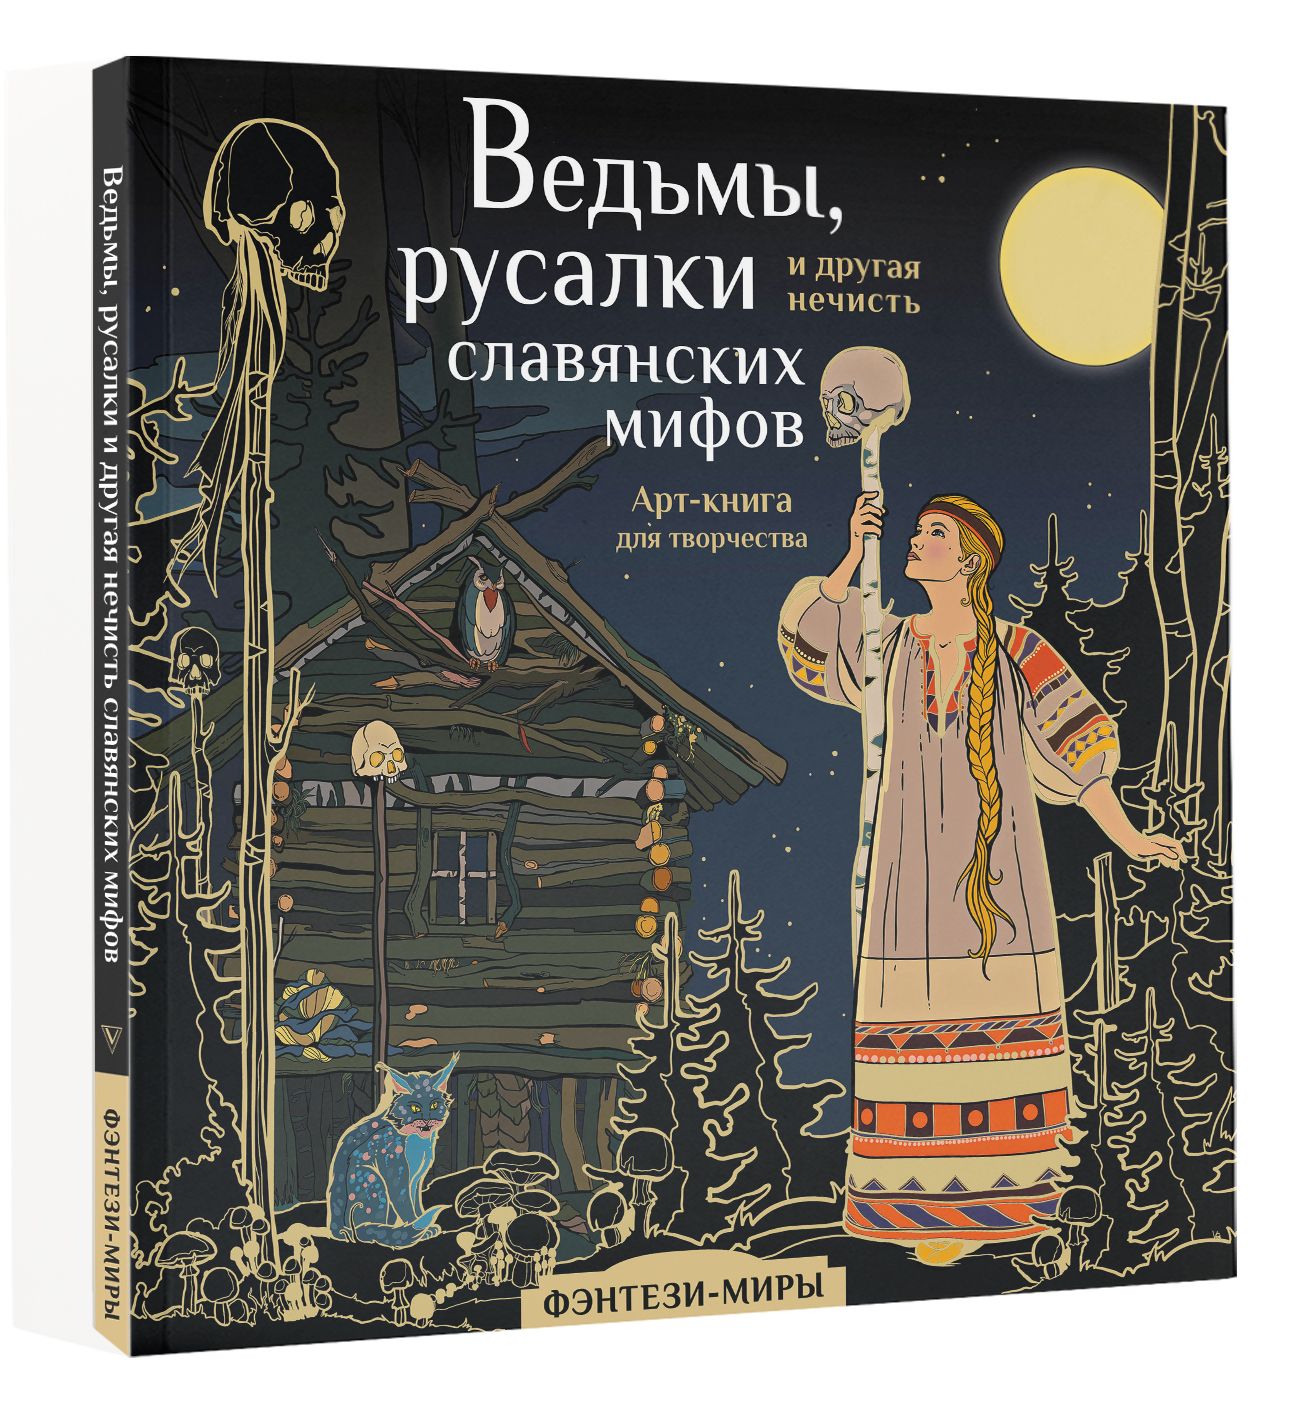 Потрясающие раскраски ведьмы из славянских мифов